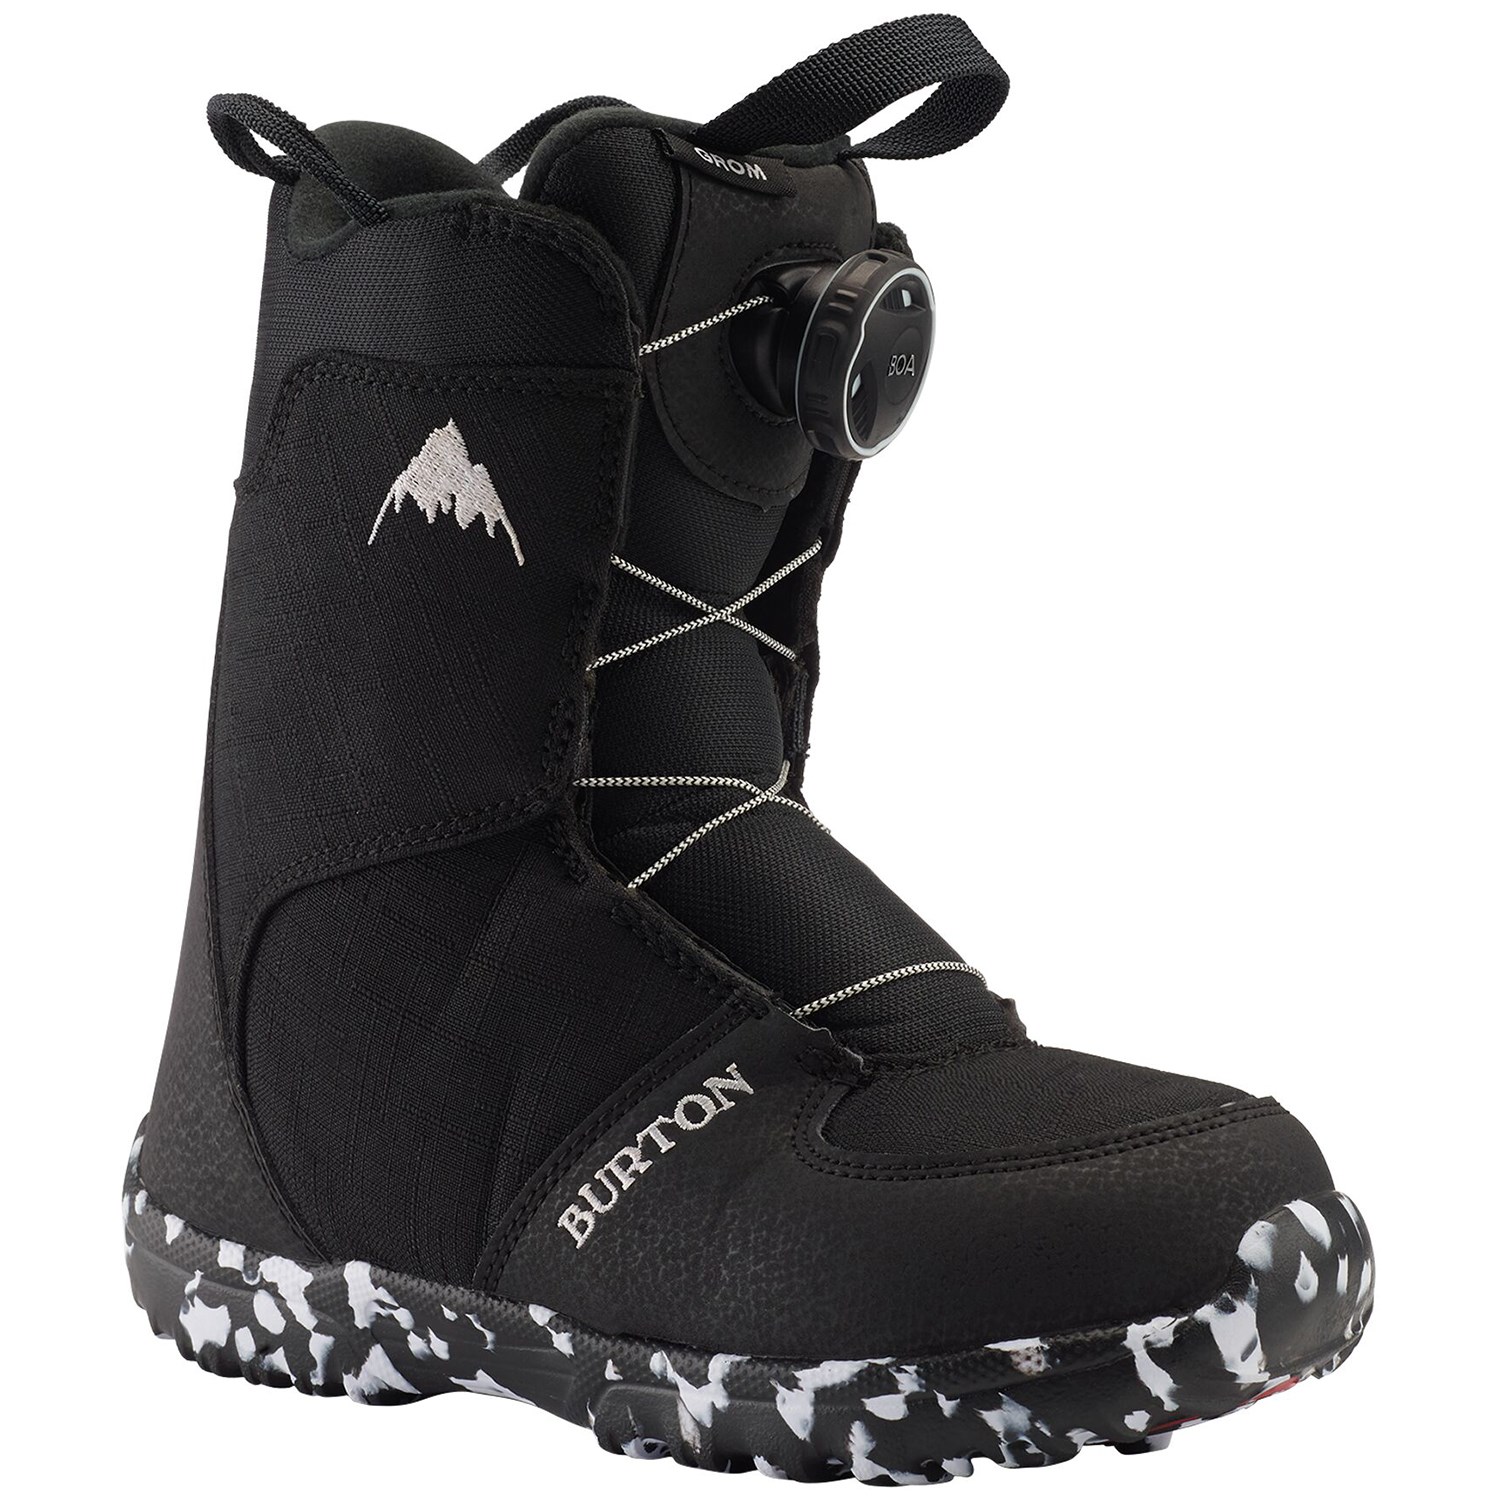 Ботинки для сноубординга Burton Grom Boa, черный детские сноубордические ботинки burton grom boa р 12c white